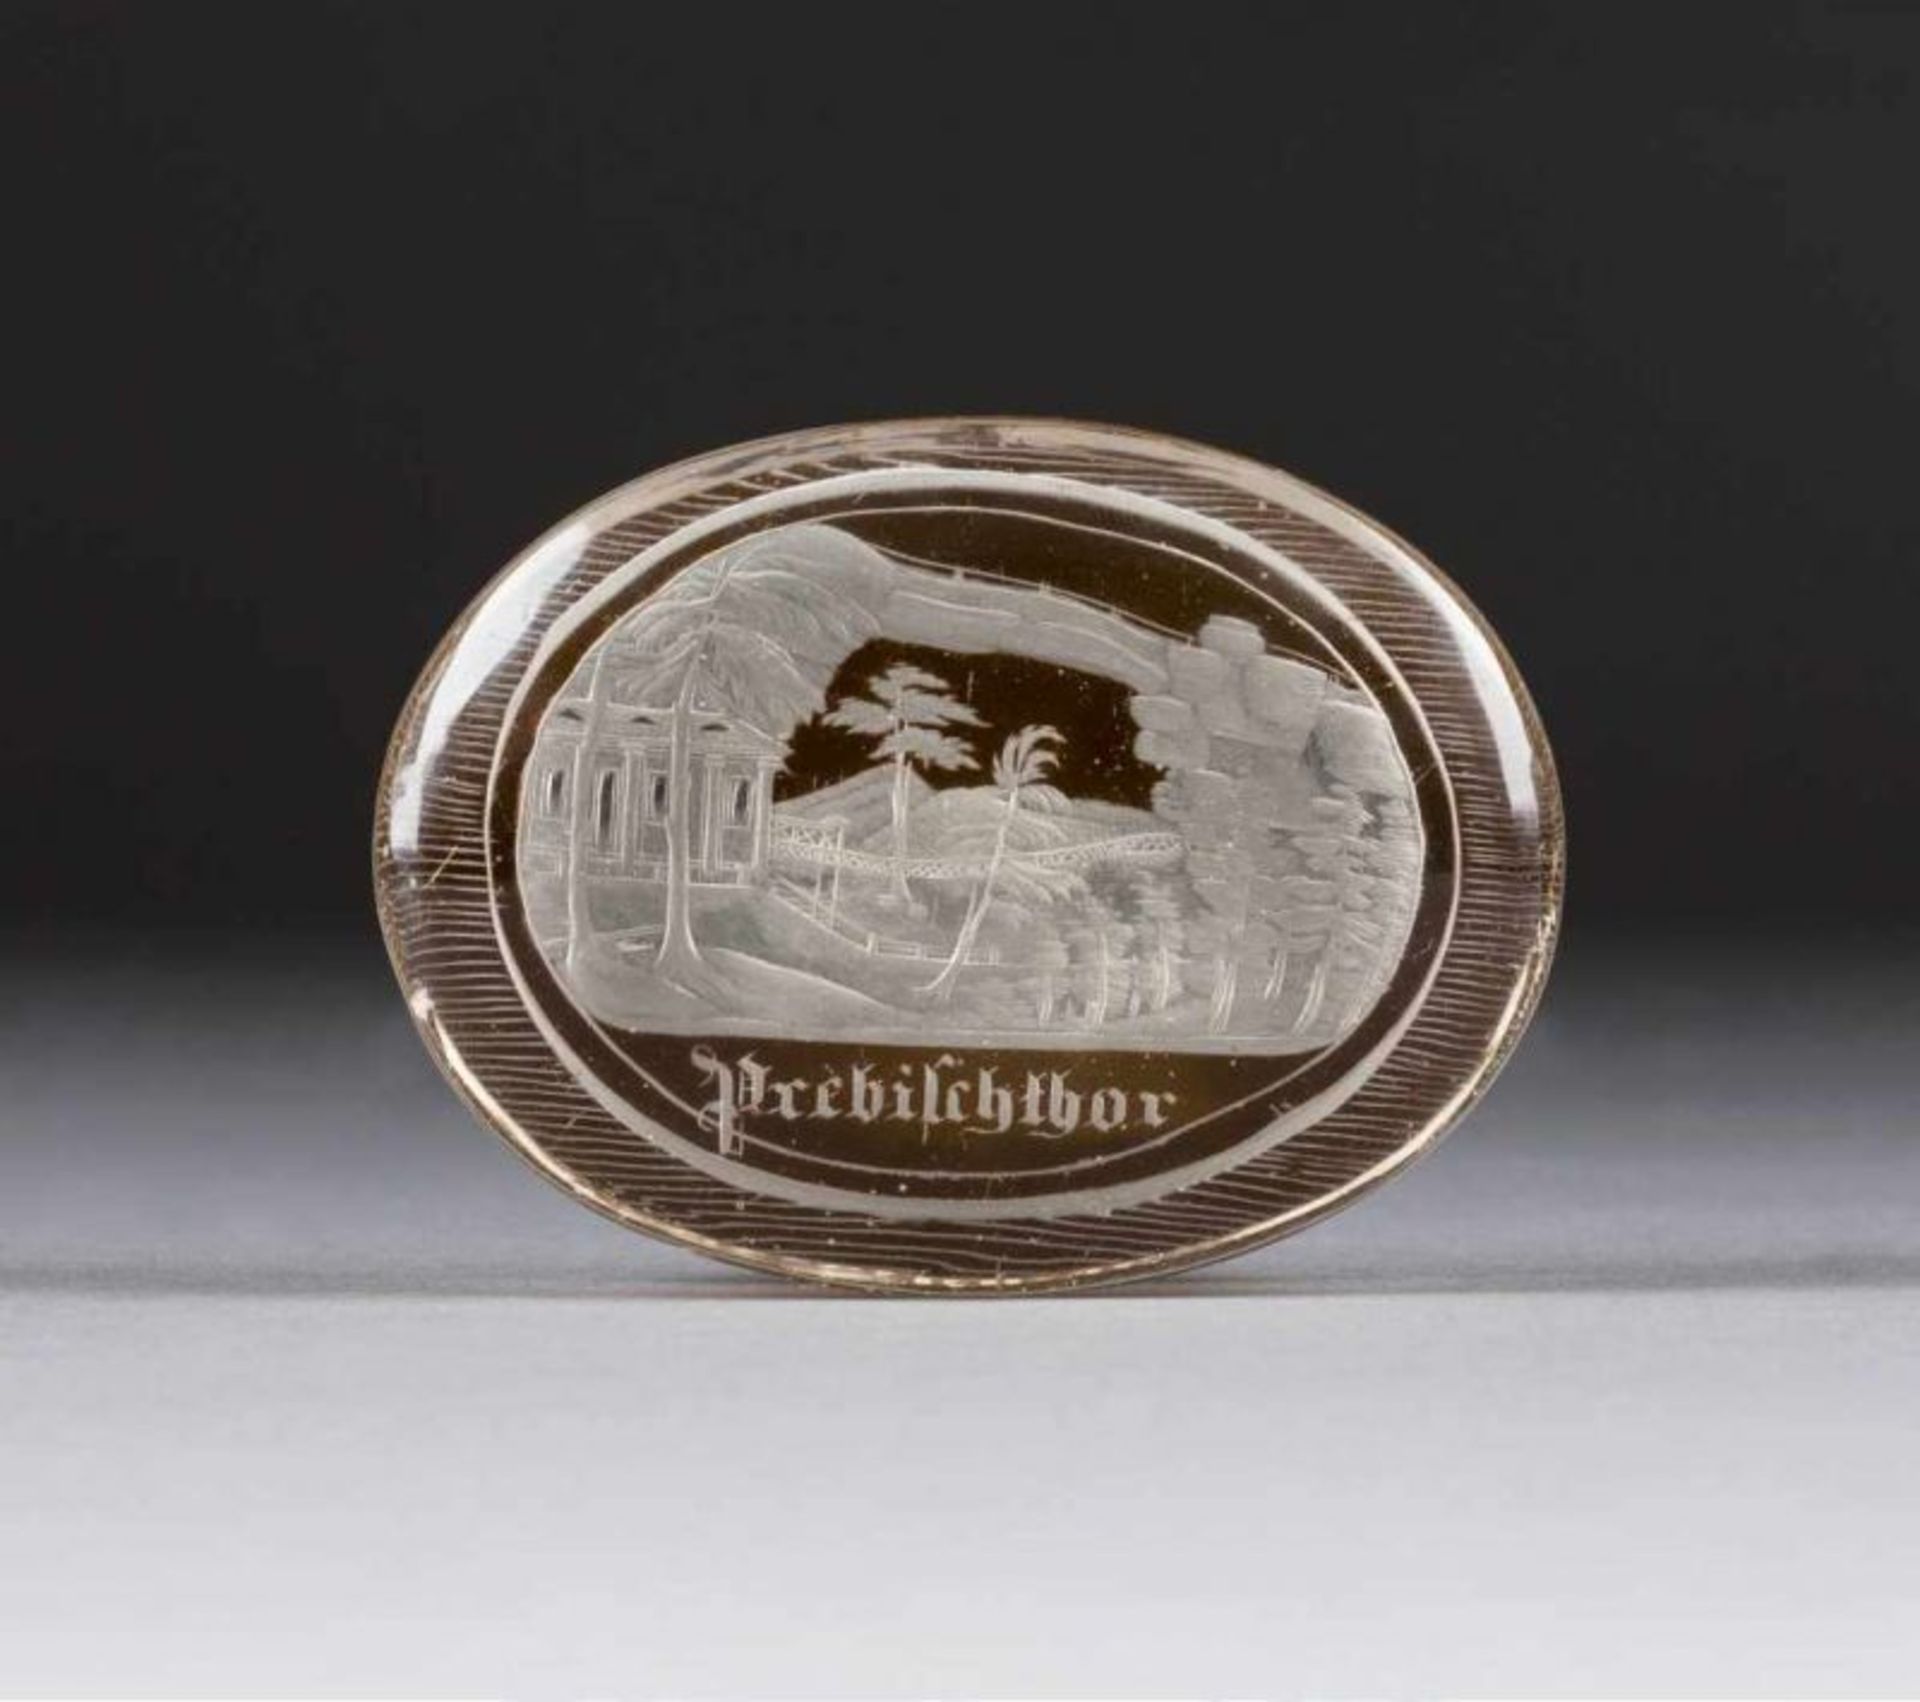 BRIEFBESCHWERER 'PREBISCHTOR' Böhmen, 1840-1860 Farbloses Glas, bräunlich Unterfangen, geschnitten